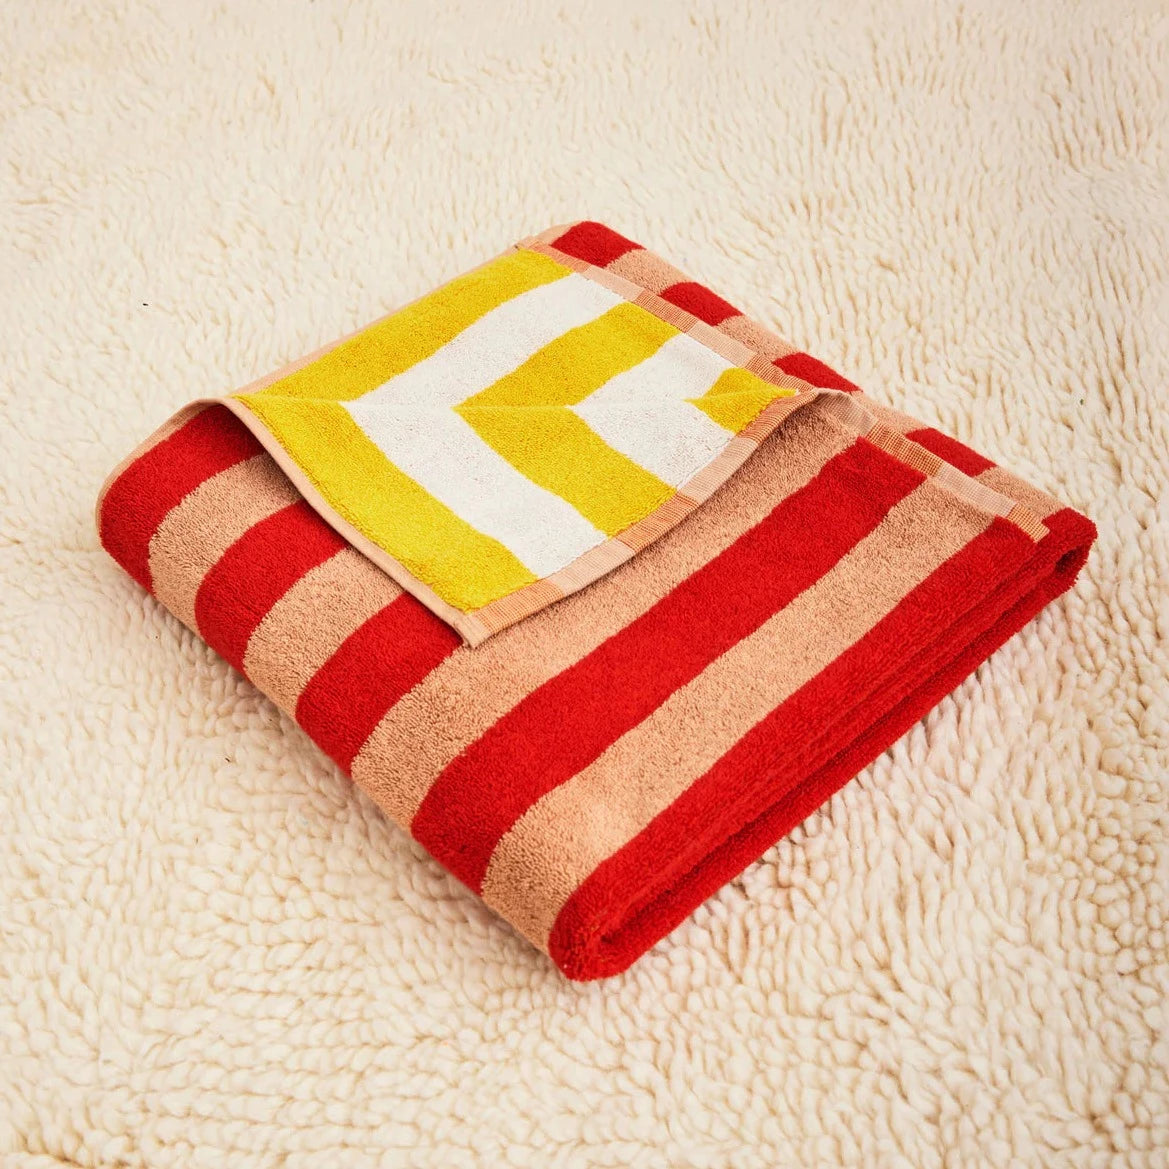 ClearloveWL Bath towel, Thick Soft Plaid Towel Set Stripe Beauty